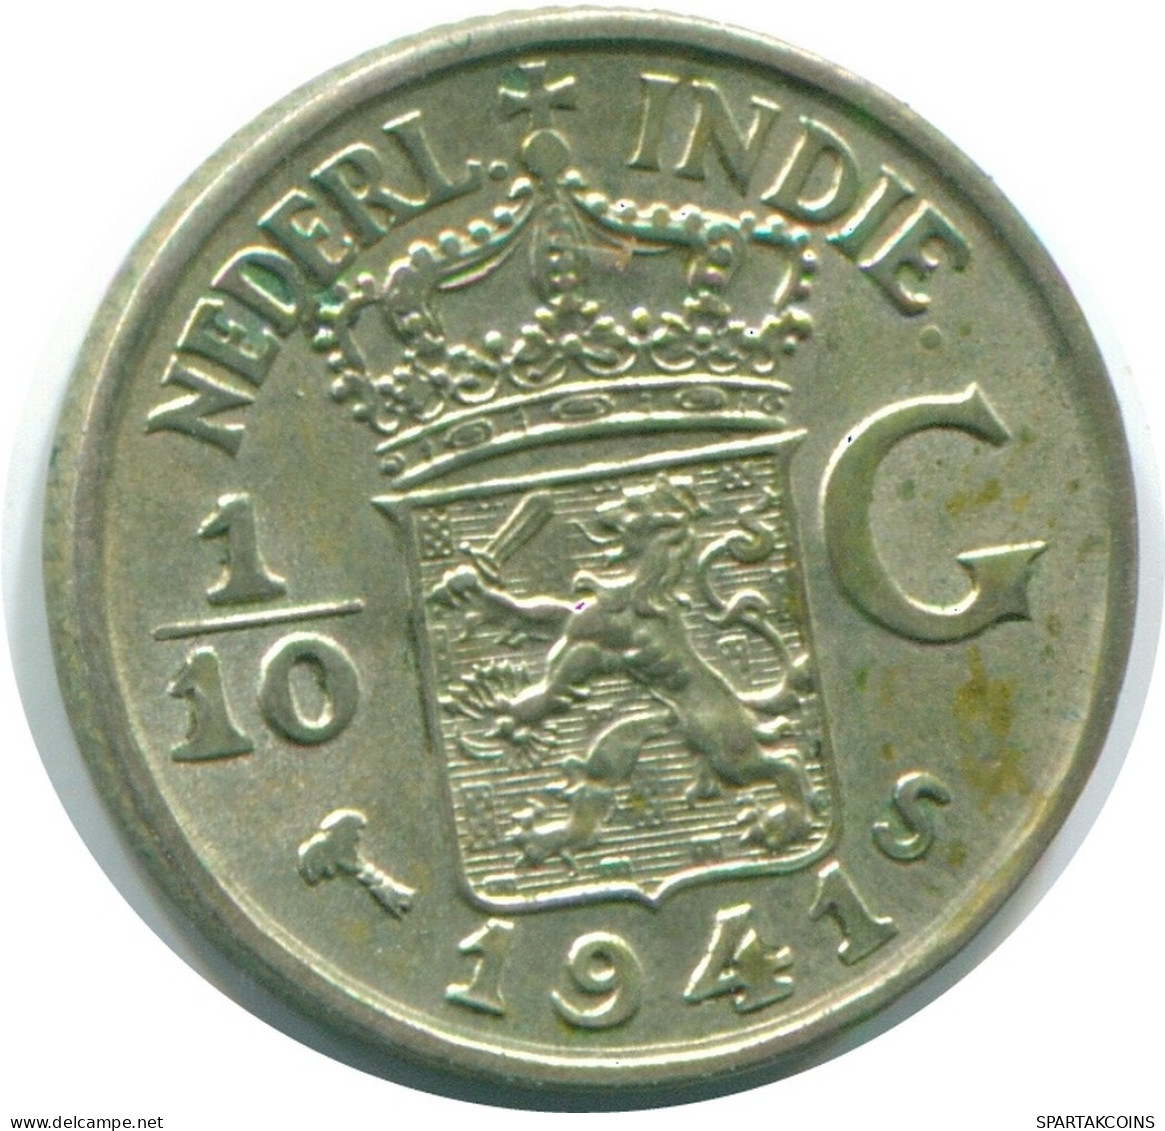 1/10 GULDEN 1941 S NETHERLANDS EAST INDIES SILVER Colonial Coin #NL13818.3.U.A - Niederländisch-Indien